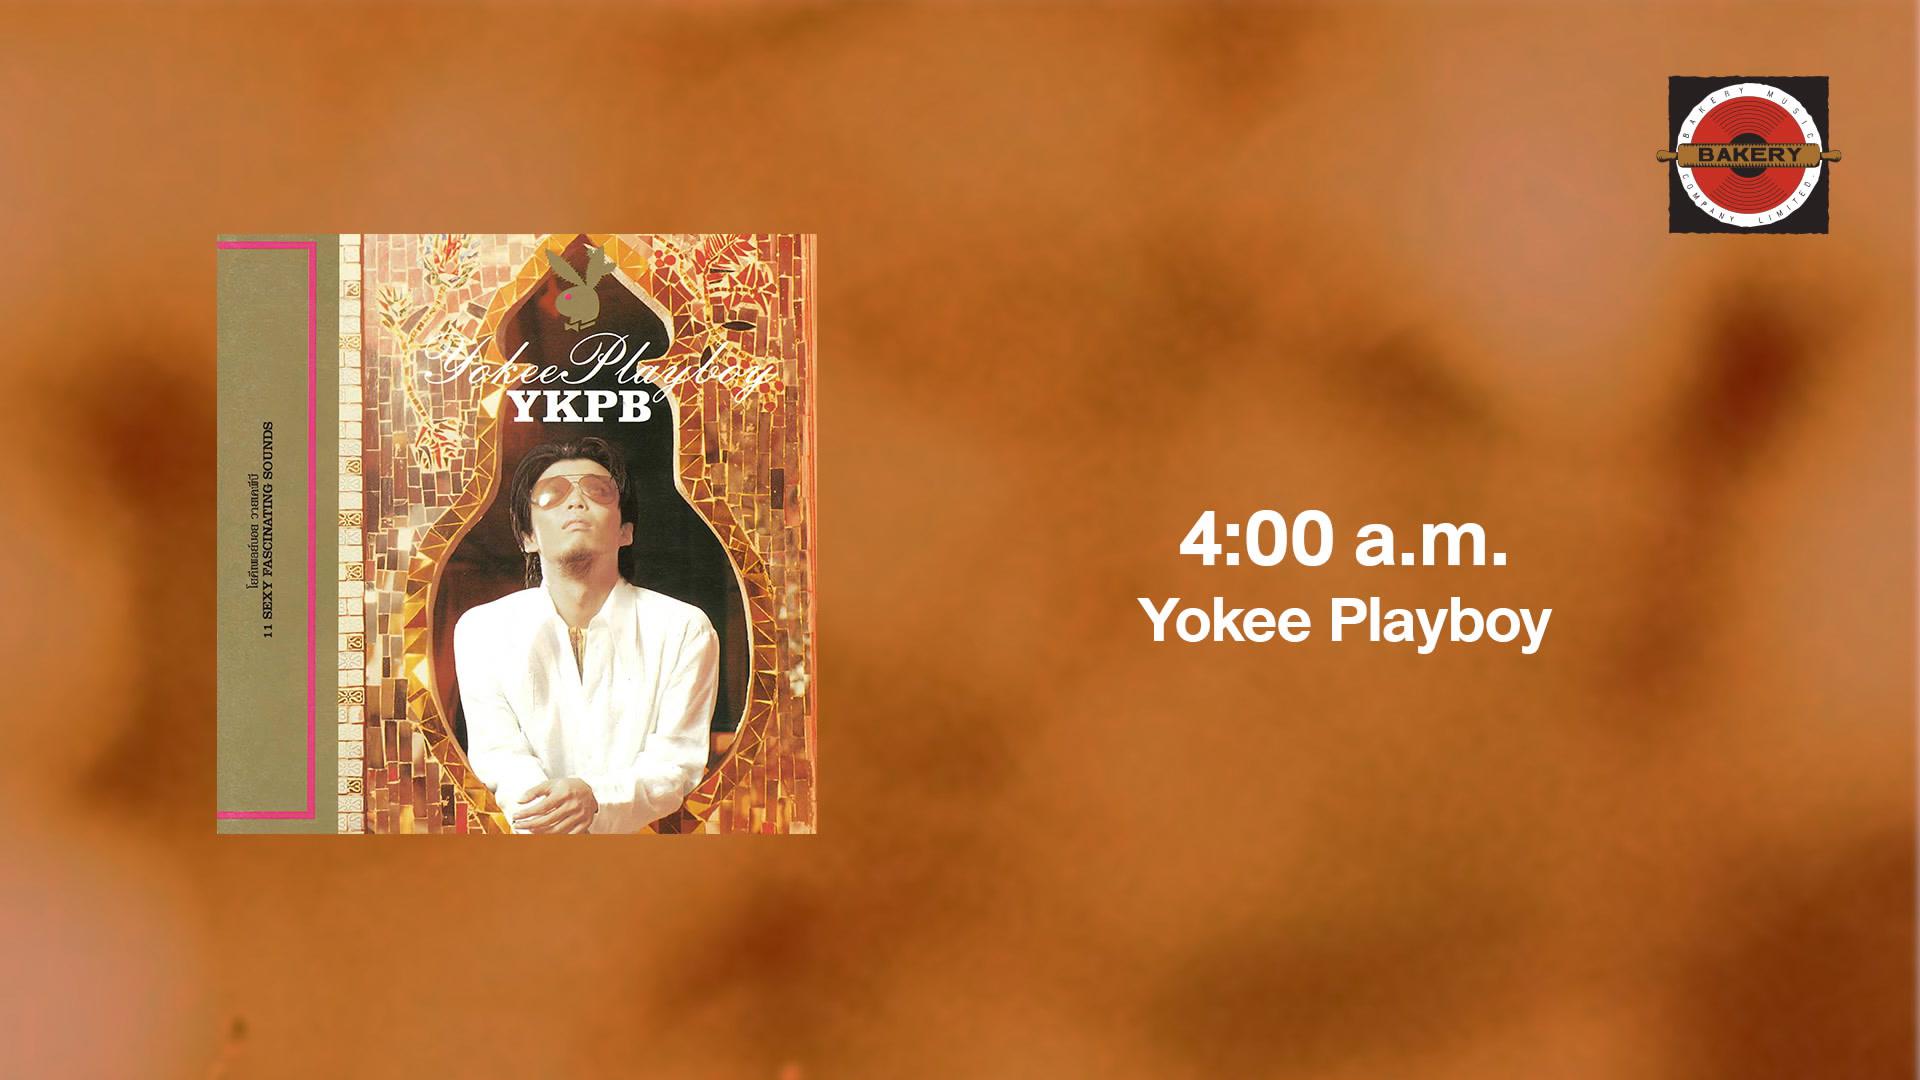 Yokee Playboy - 4:00 a.m.